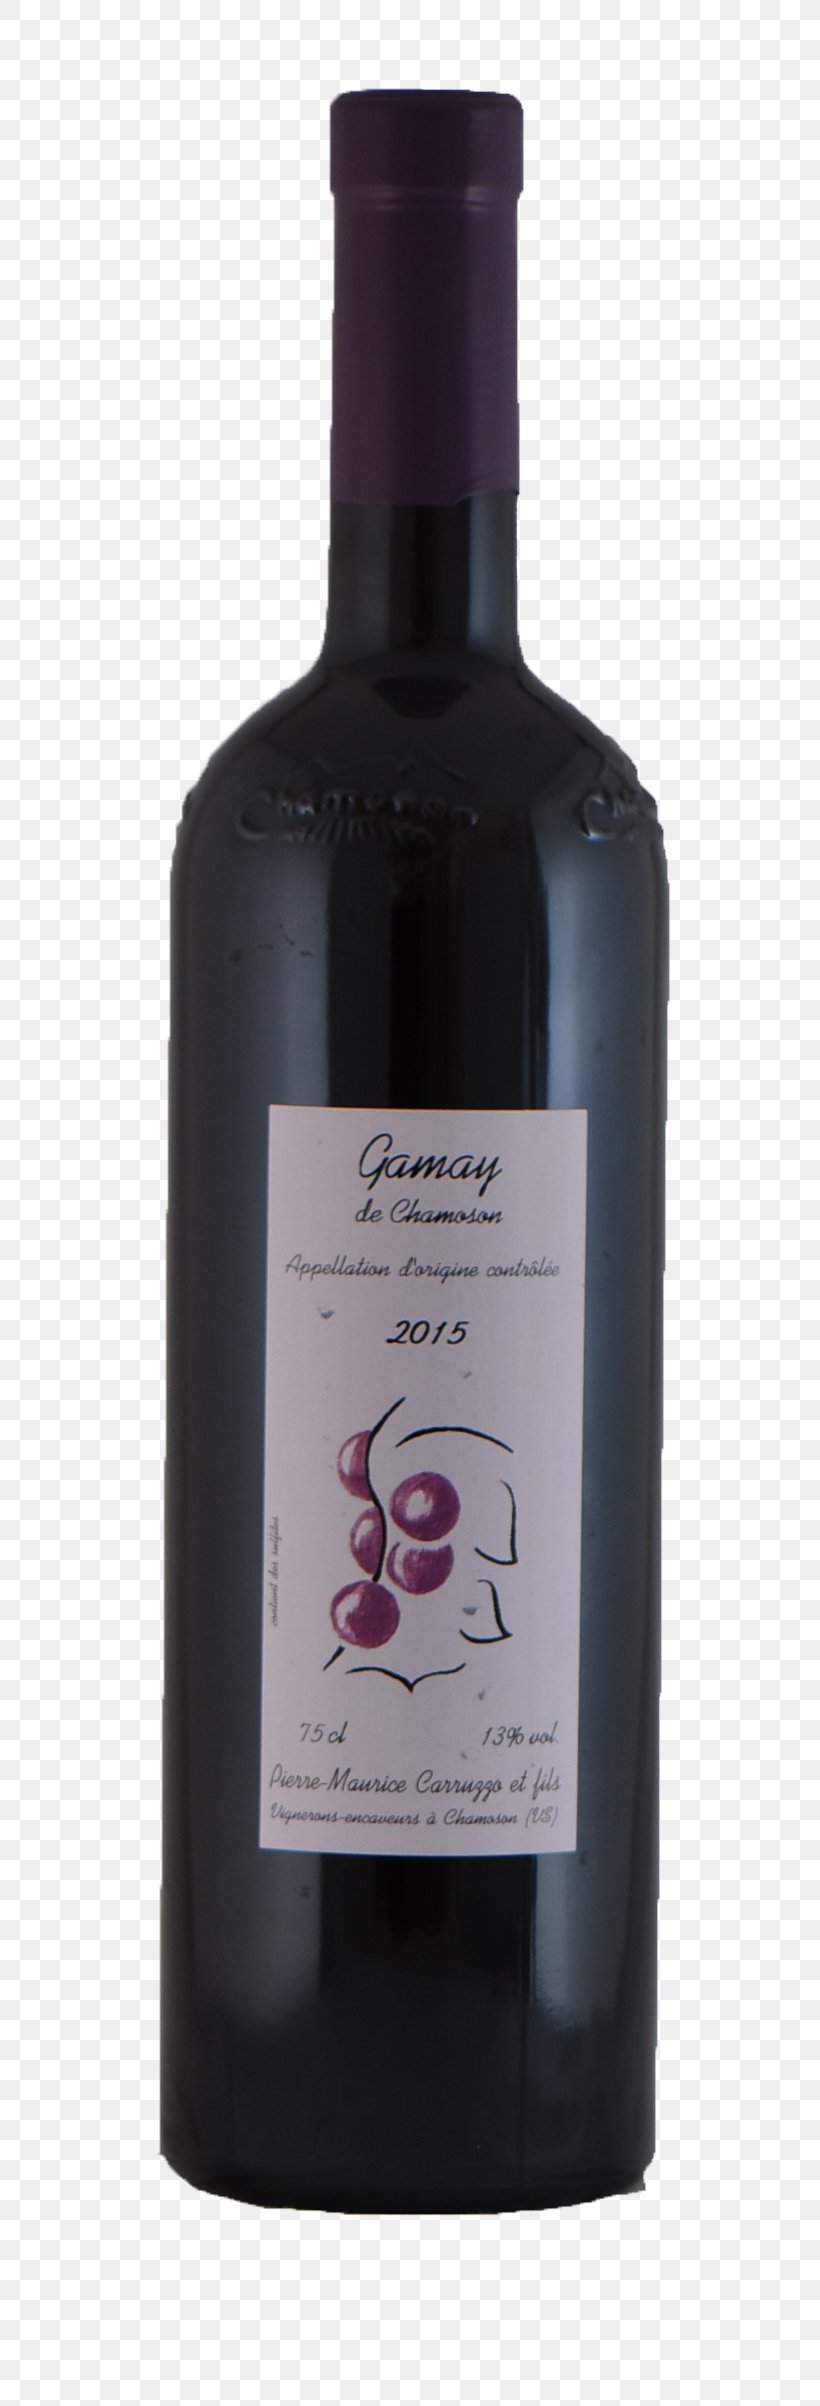 Leone De Castris Liqueur Red Wine Rosé, PNG, 722x2406px, Liqueur, Alcoholic Beverage, Bottle, Common Grape Vine, Distilled Beverage Download Free